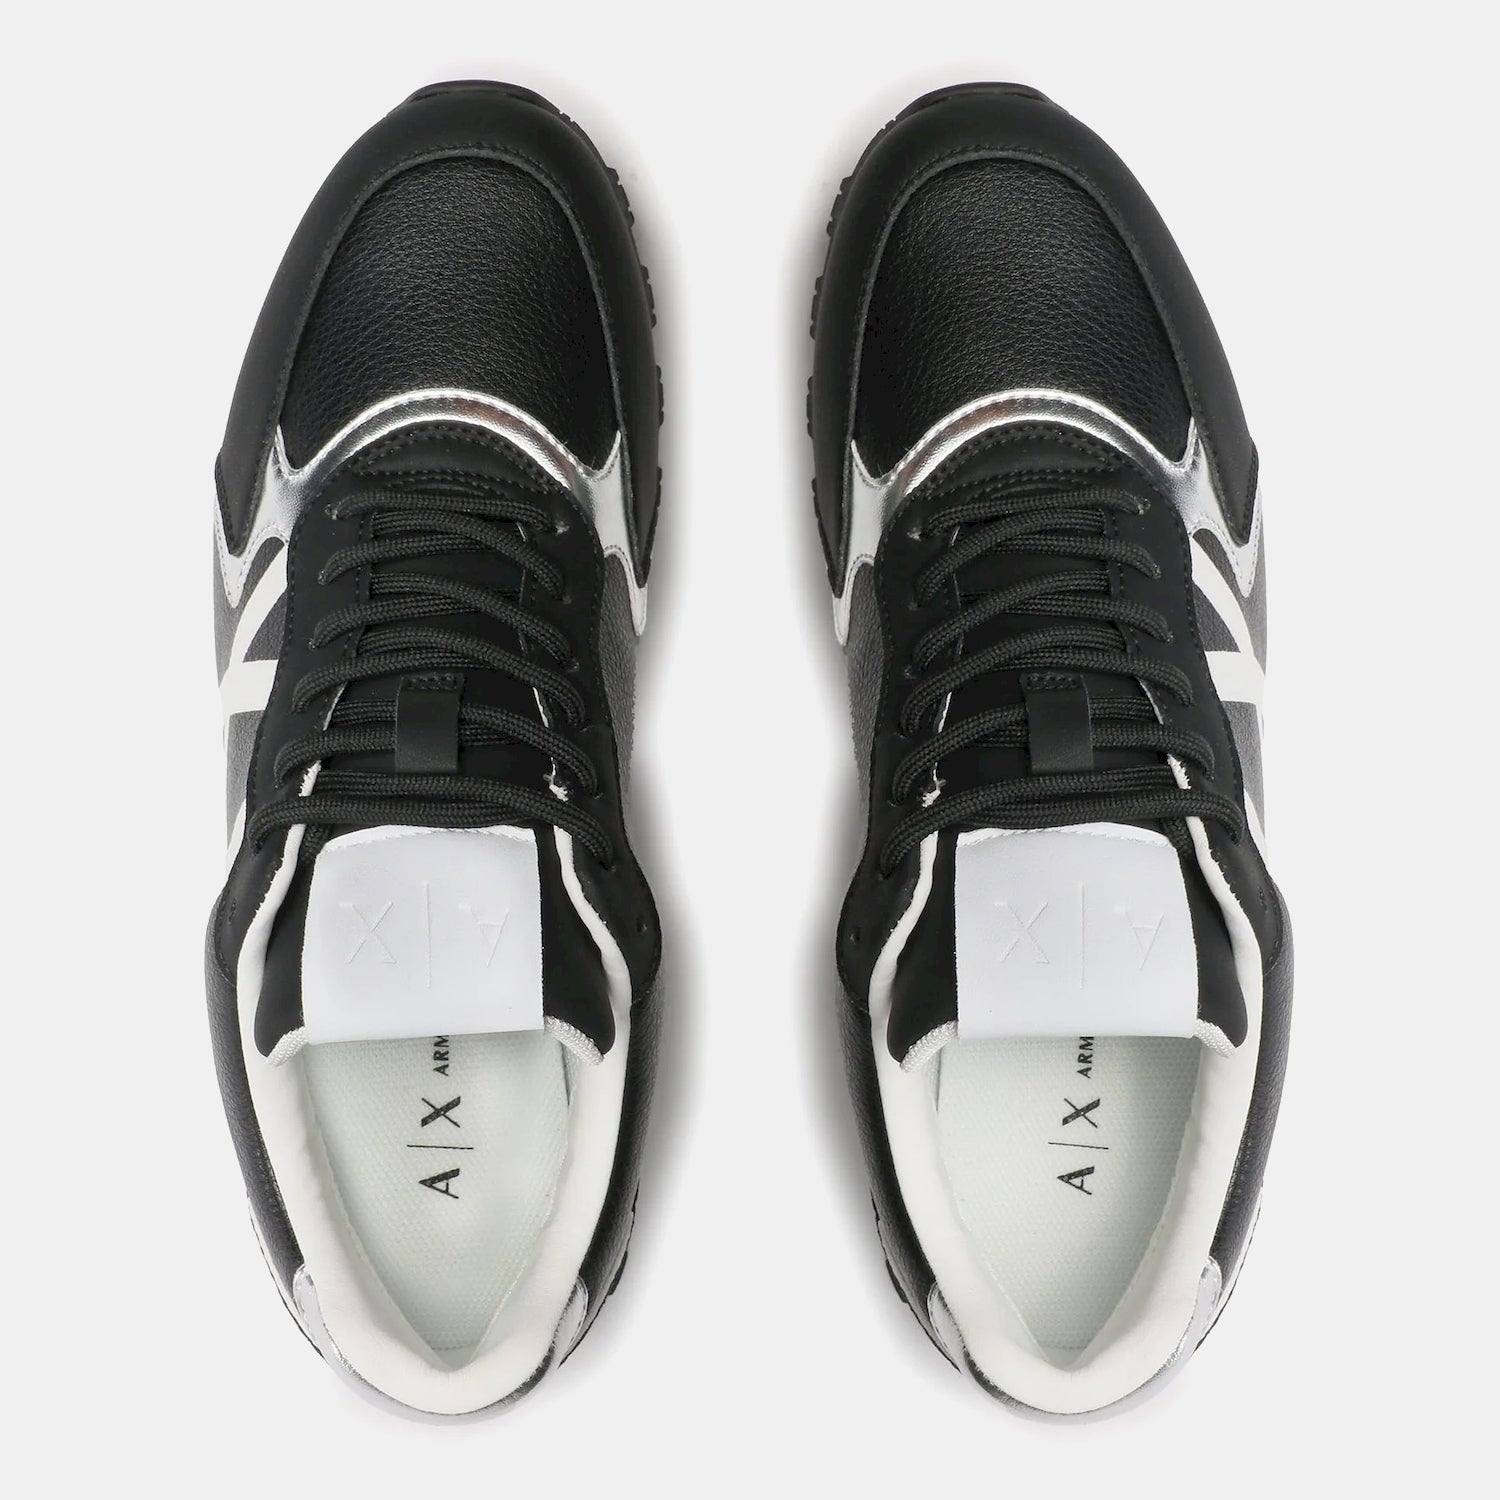 Armani Exchange Sapatilhas Sneakers Shoes Xdx139 Xv733 Blk White Preto Branco_shot4